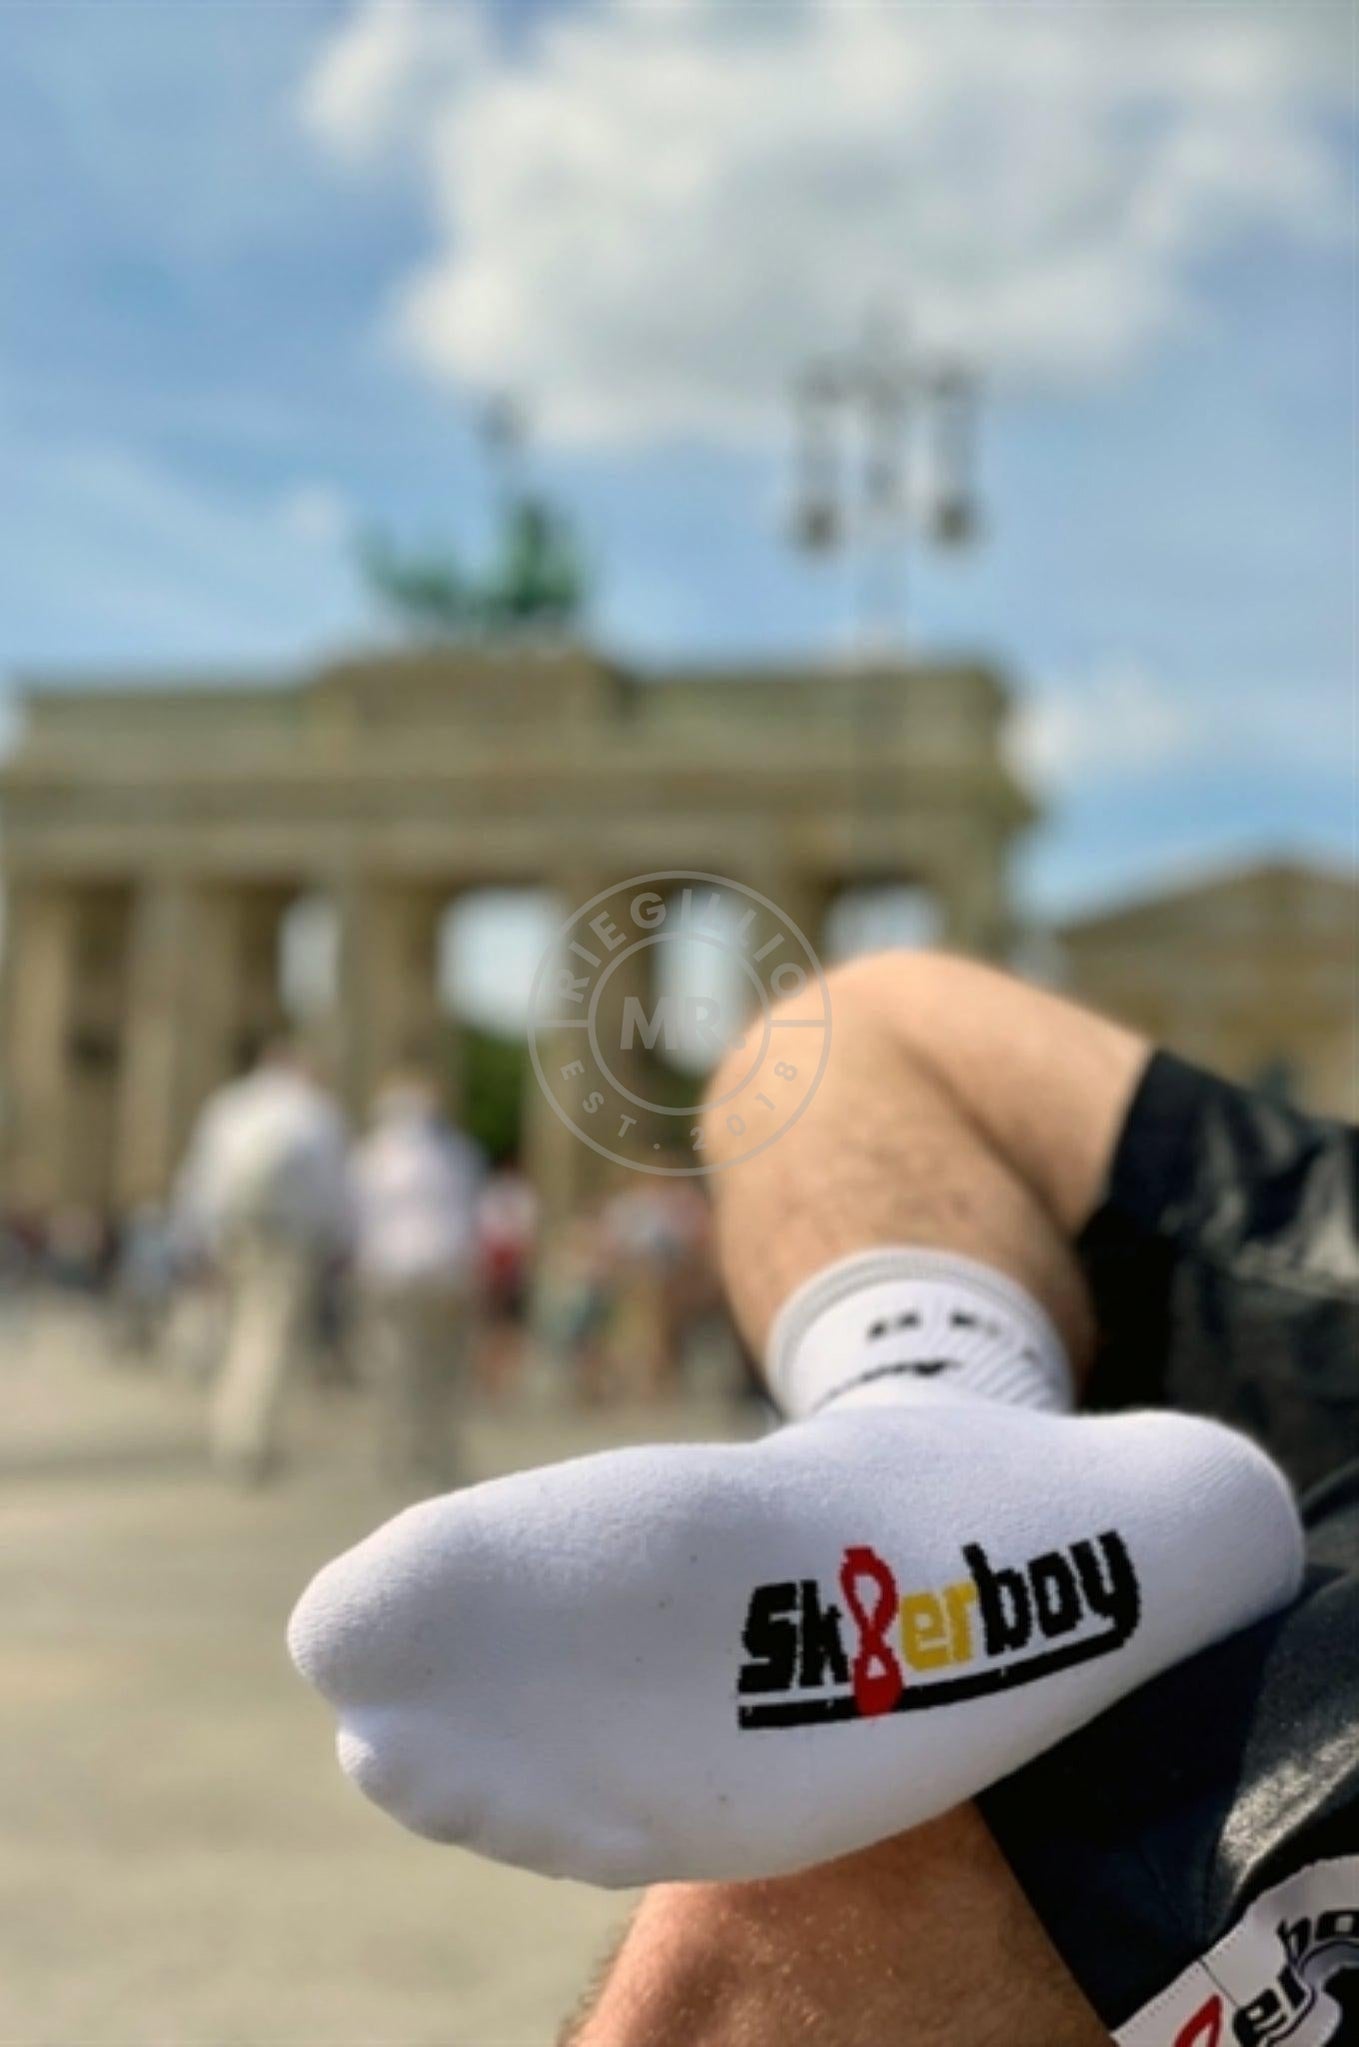 Sk8erboy Berlin Socks at MR. Riegillio